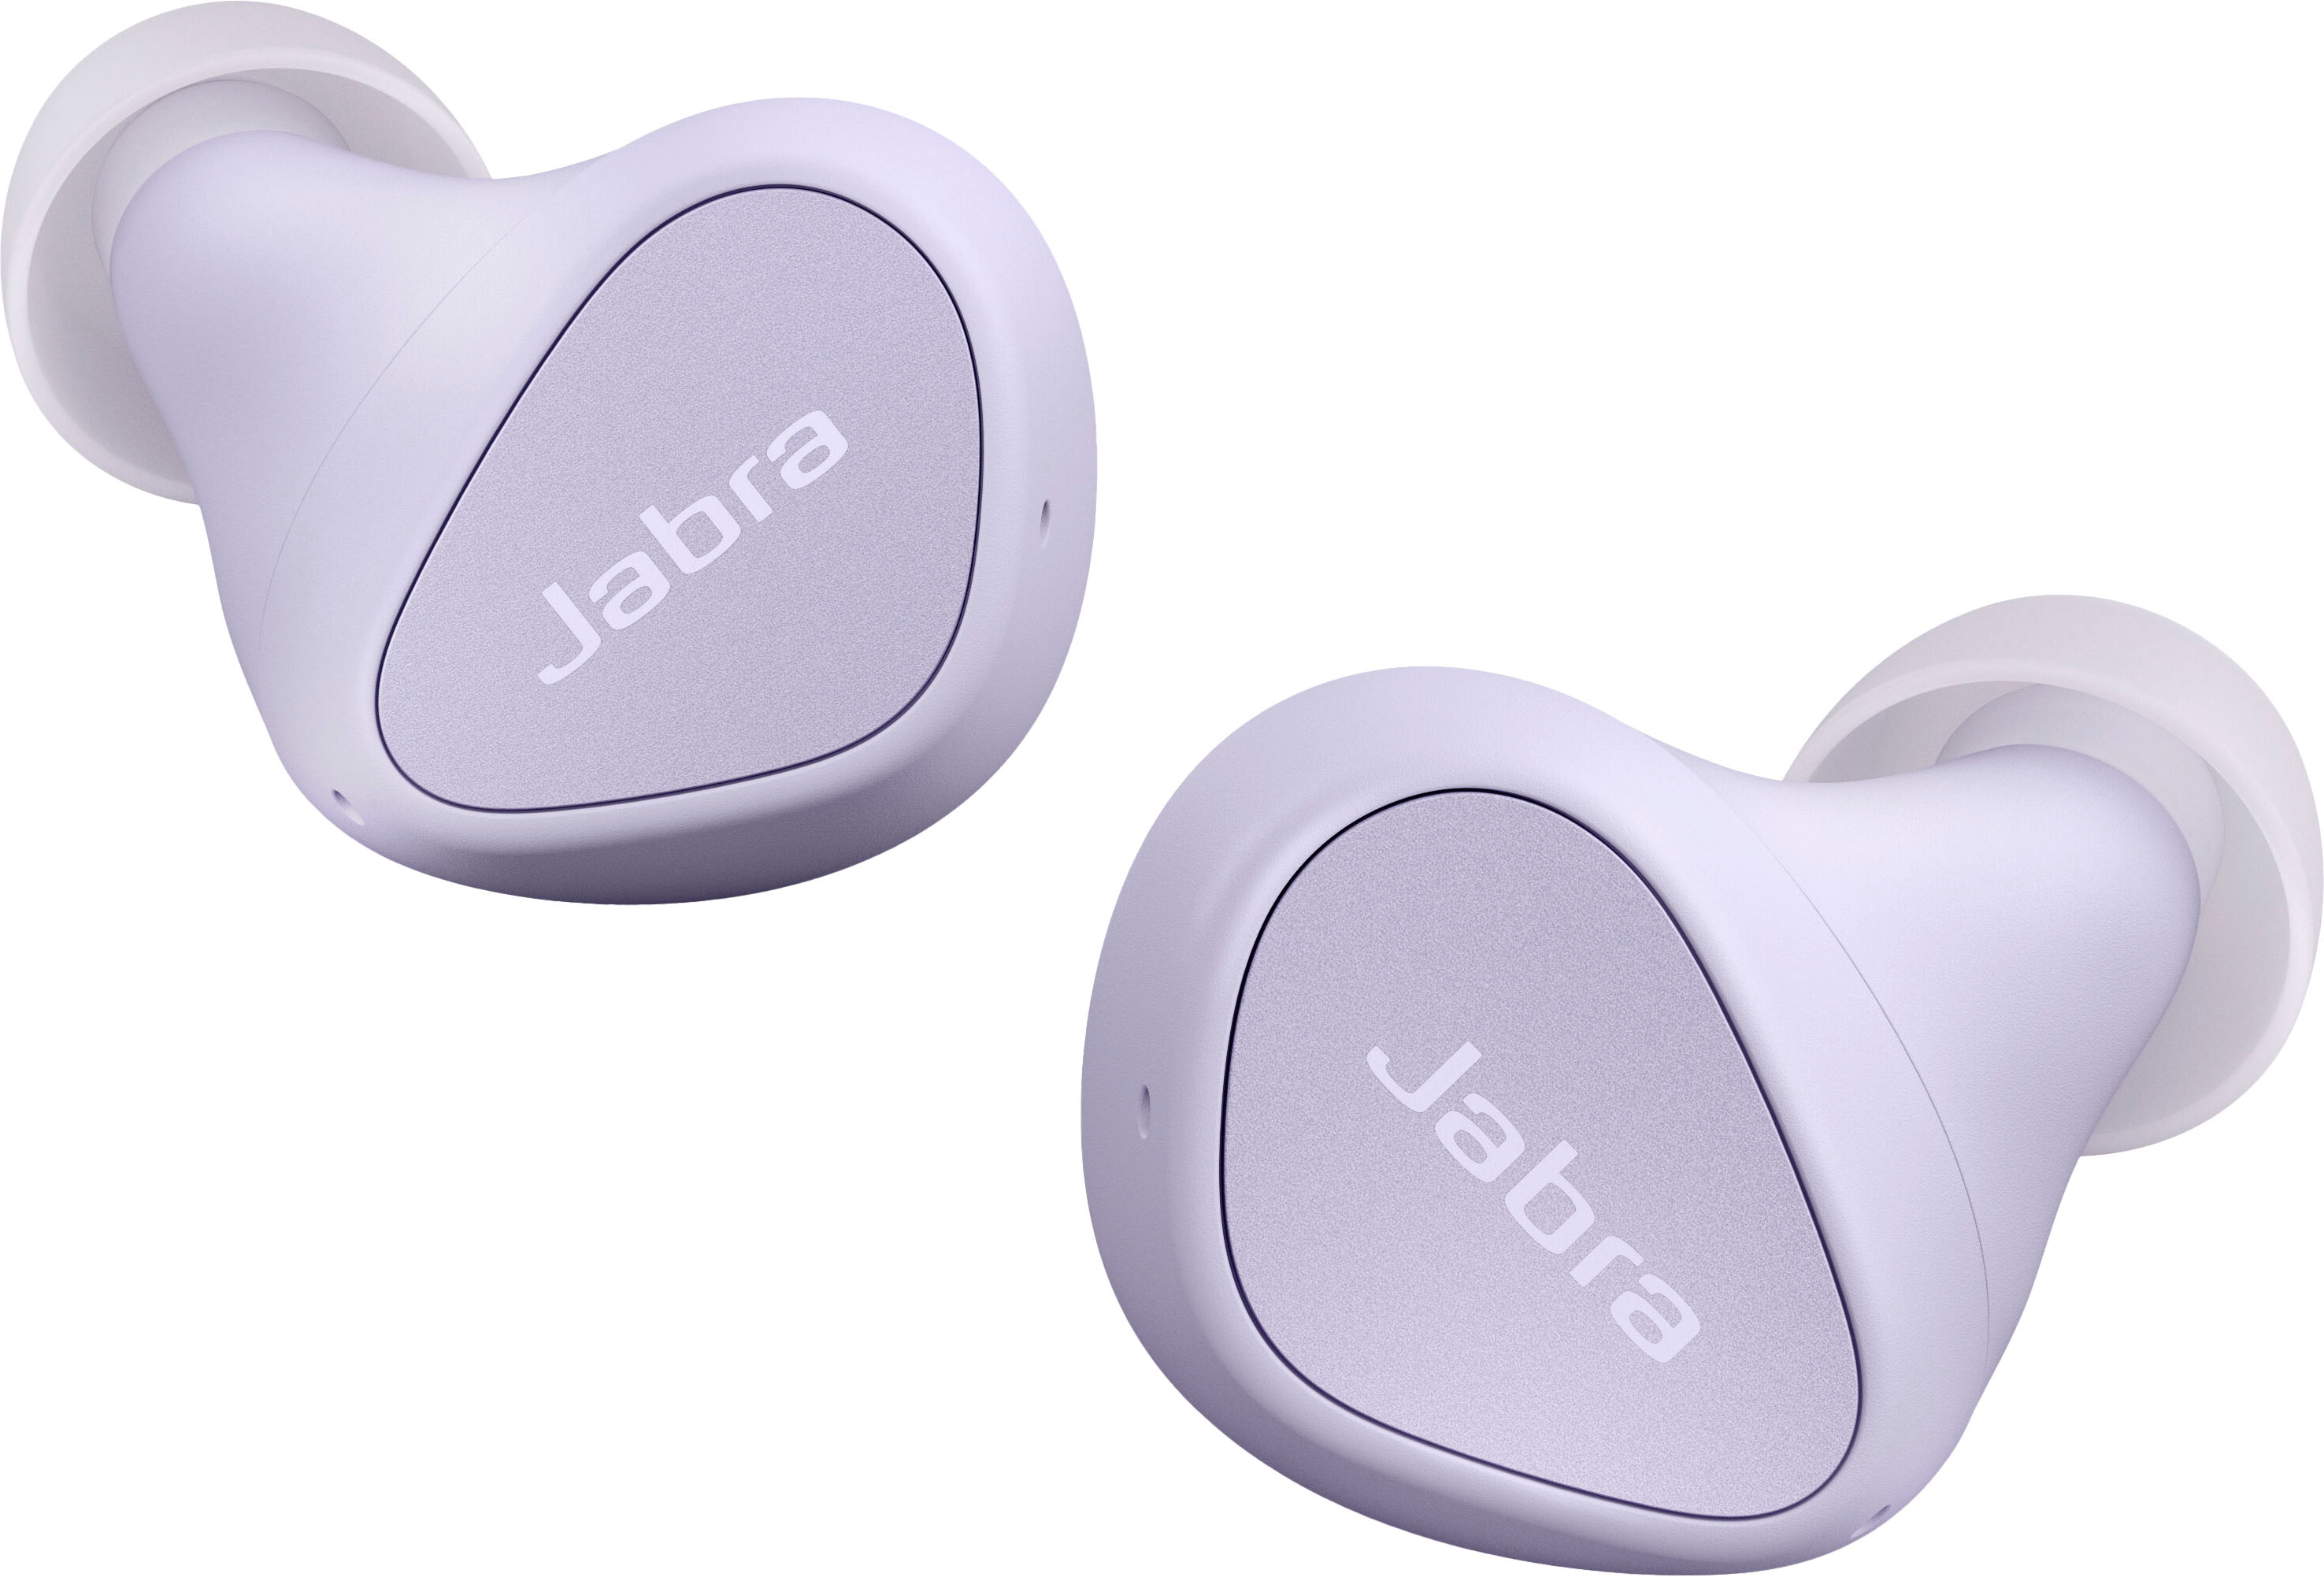 Jabra 4 True Wireless Noise Cancelling In-ear Headphones Lilac 100-99183003-99 - Best Buy